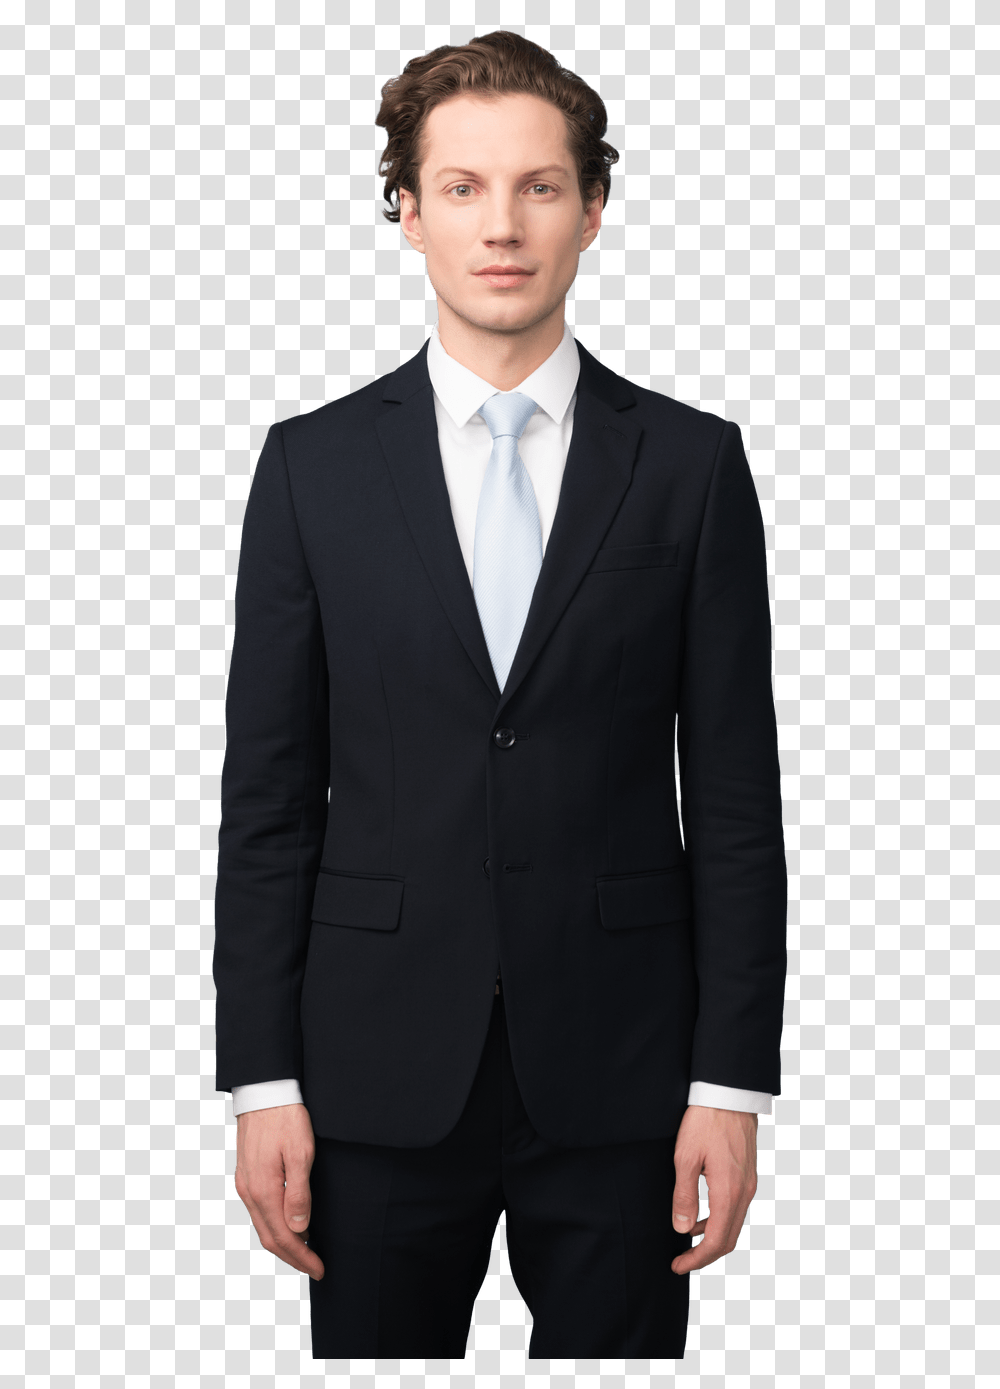 Model Suit, Tie, Accessories, Accessory Transparent Png